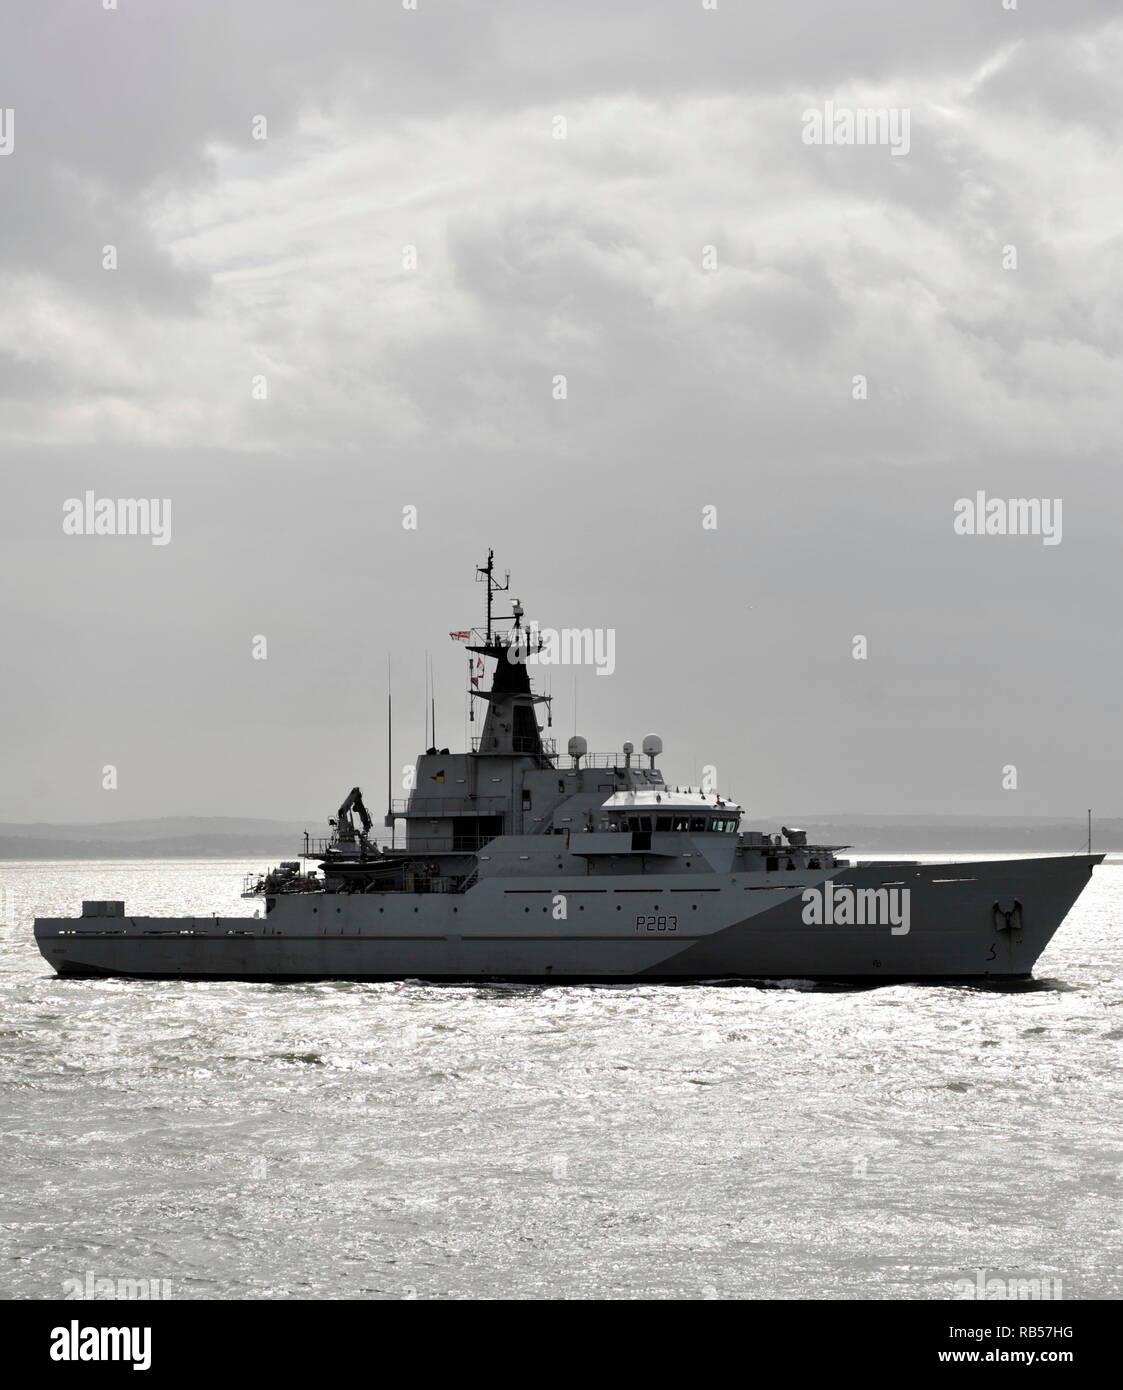 AJAXNETPHOTO. - 1 ° aprile, 2015. PORTSMOUTH, Inghilterra. - Pattuglia di SHP - HMS MERSEY (P283) entrando in porto. Aggiornamento 7TH JAN 2019; ROYAL NAVY DISTRIBUITO HMS MERSEY PER CANALE PER 'guida impediscono ai migranti rendendo il viaggio pericoloso.". Foto:TONY HOLLAND/AJAX REF;DTH150104 37418 Foto Stock